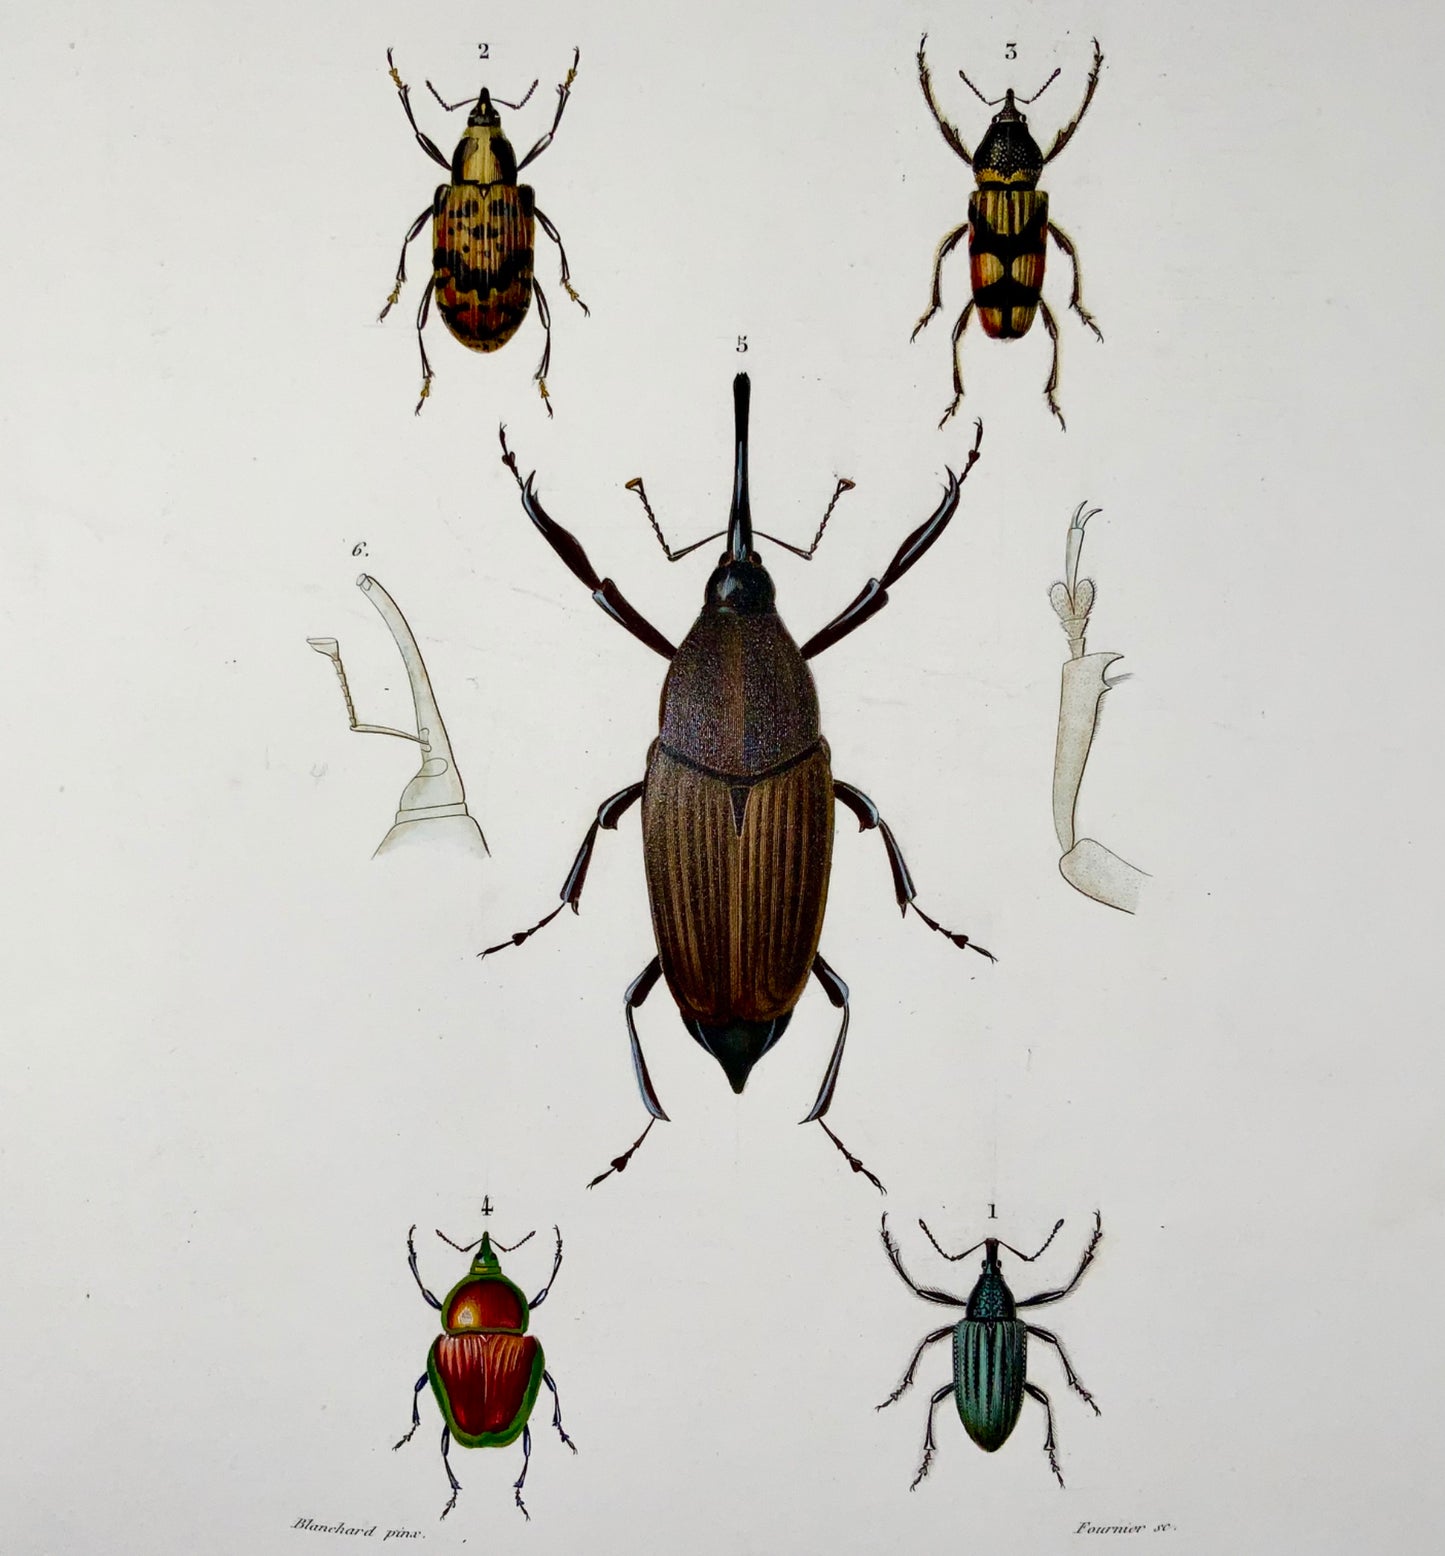 1849 Fournier, Blanchard, Coleotteri, squisito colore a mano, foglio, insetti